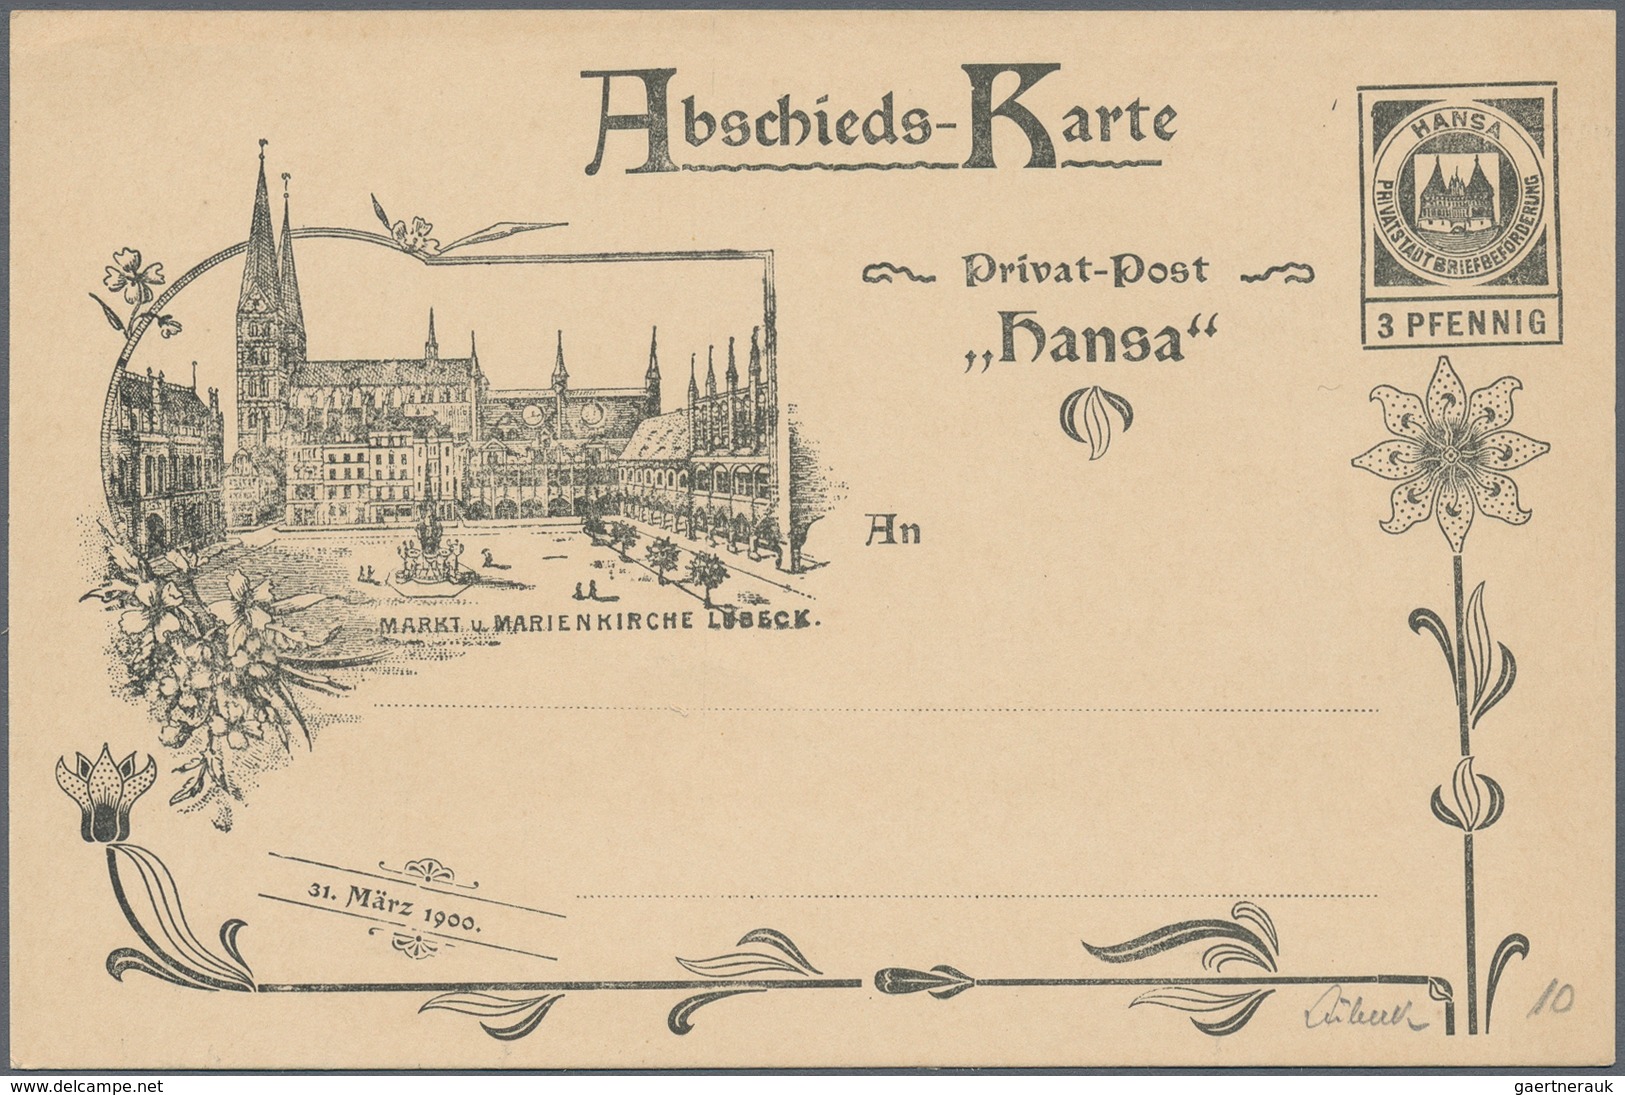 Deutsches Reich - Privatpost (Stadtpost): 1880/1900 (ca.), umfassende Sammlung von ca. 760 (meist un